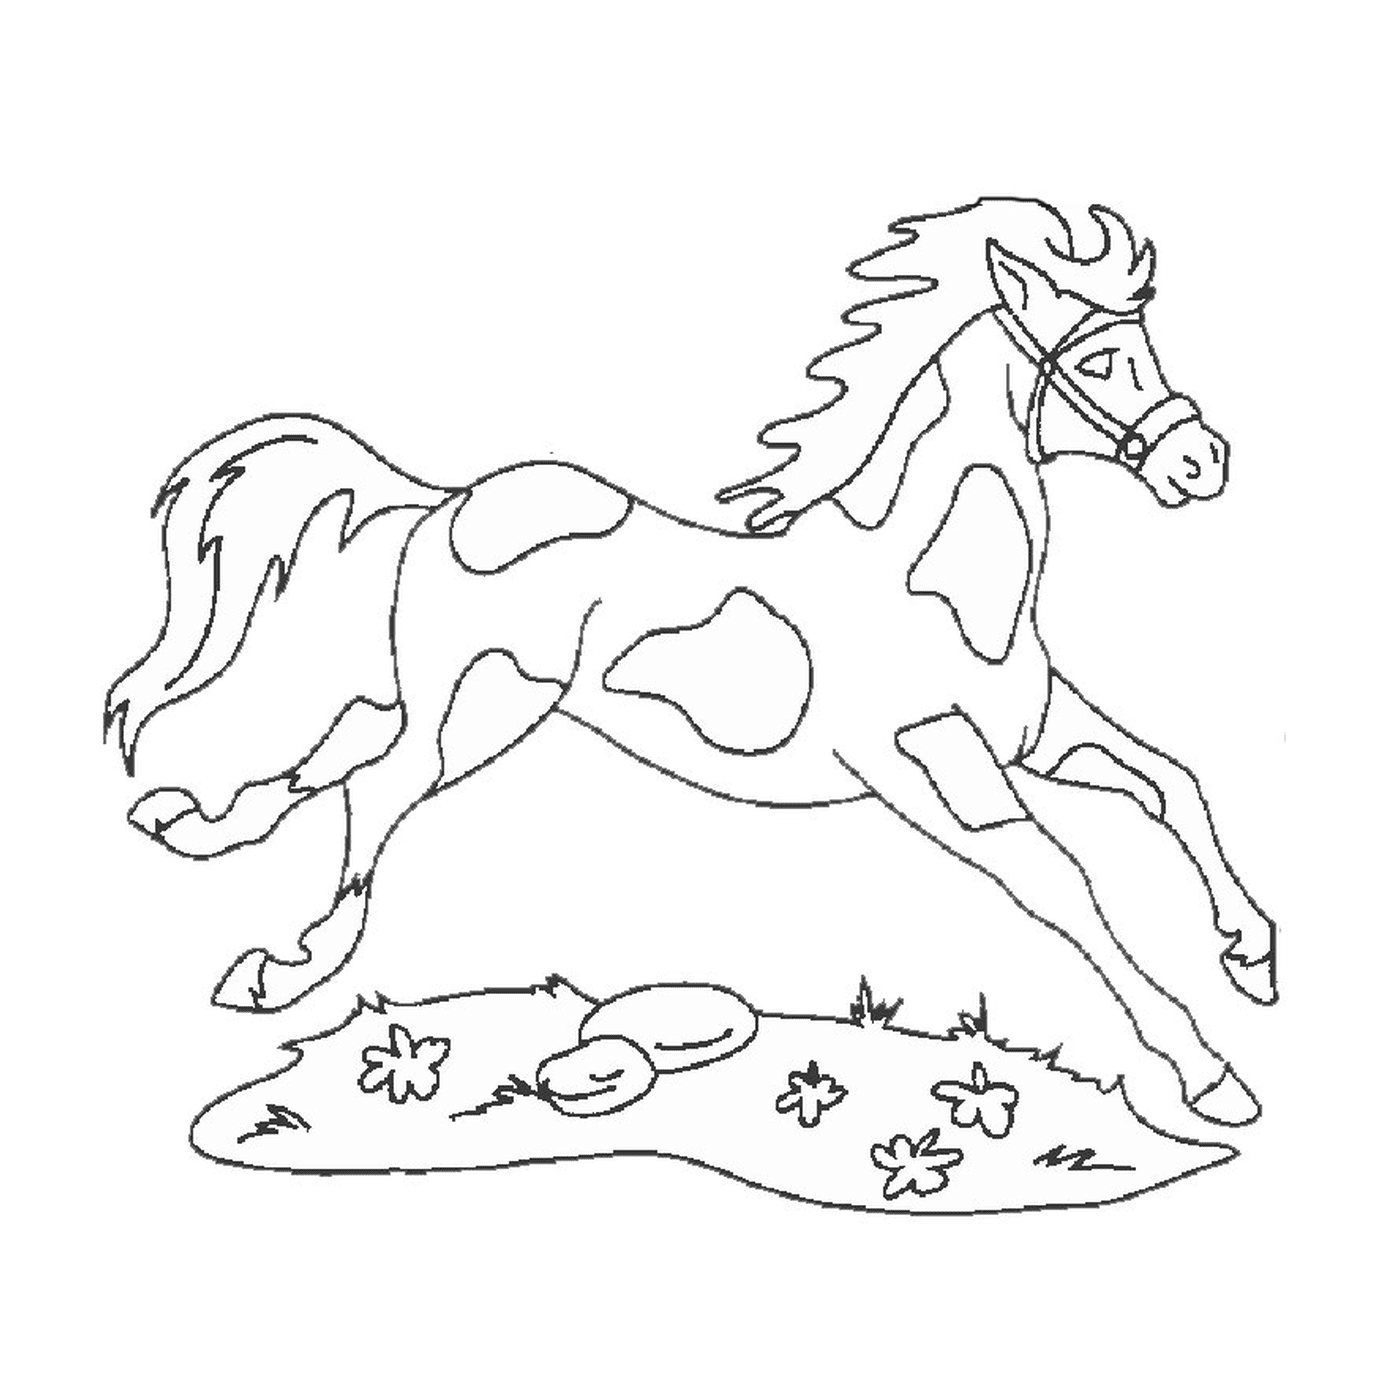  Лошадь и собака - бегущая лошадь 